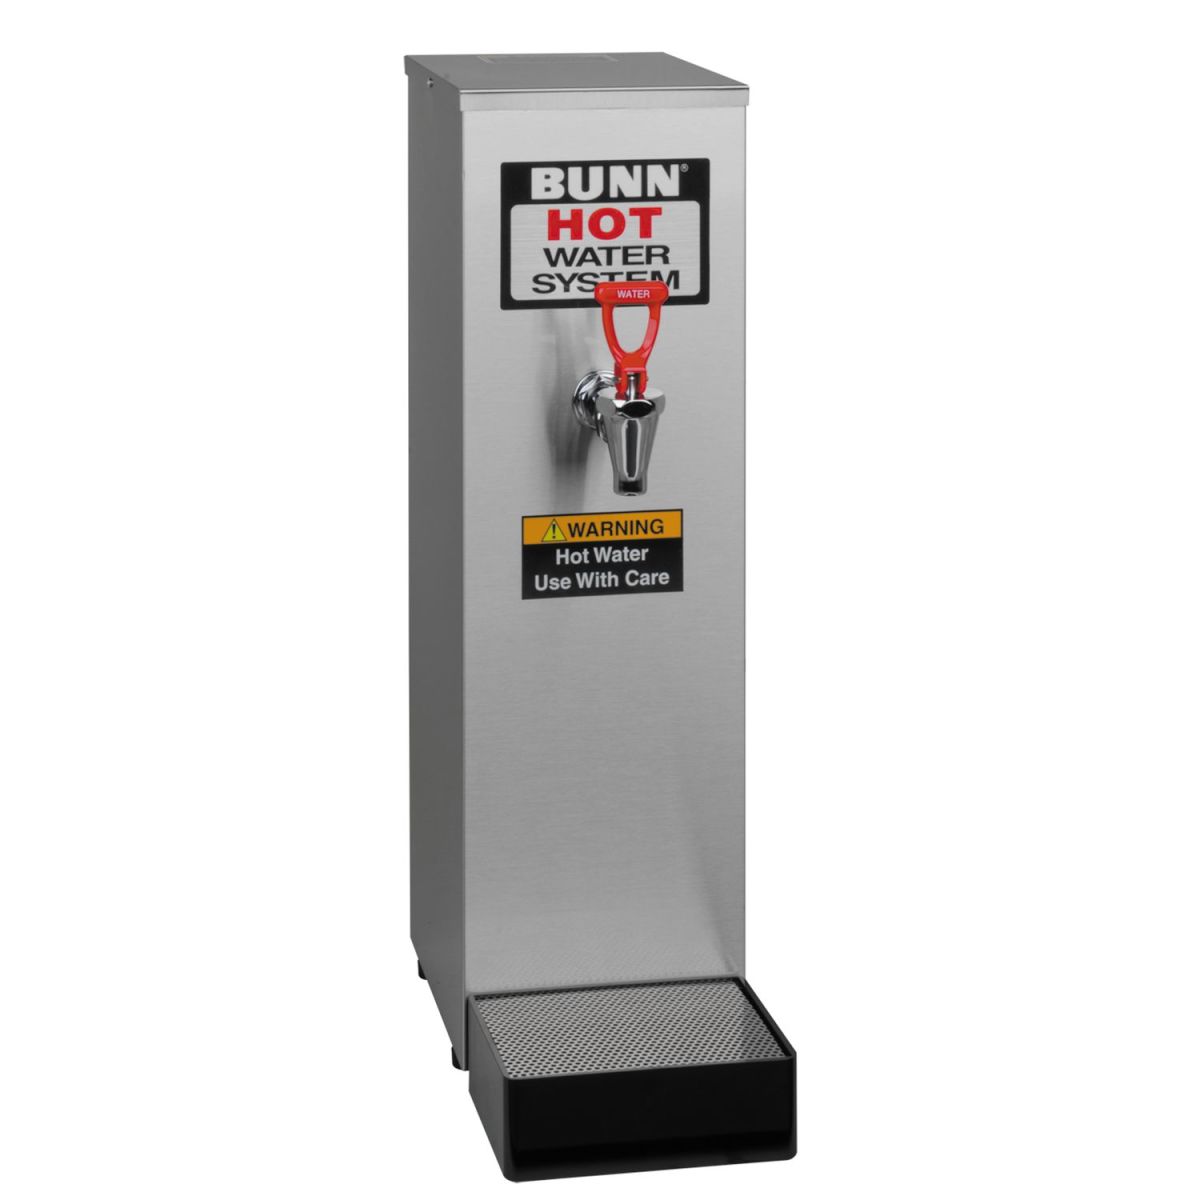 Bunn HW2 7.6 L Stainless Steel Hot Water Dispenser  - Stainless Steel - 02500.6001